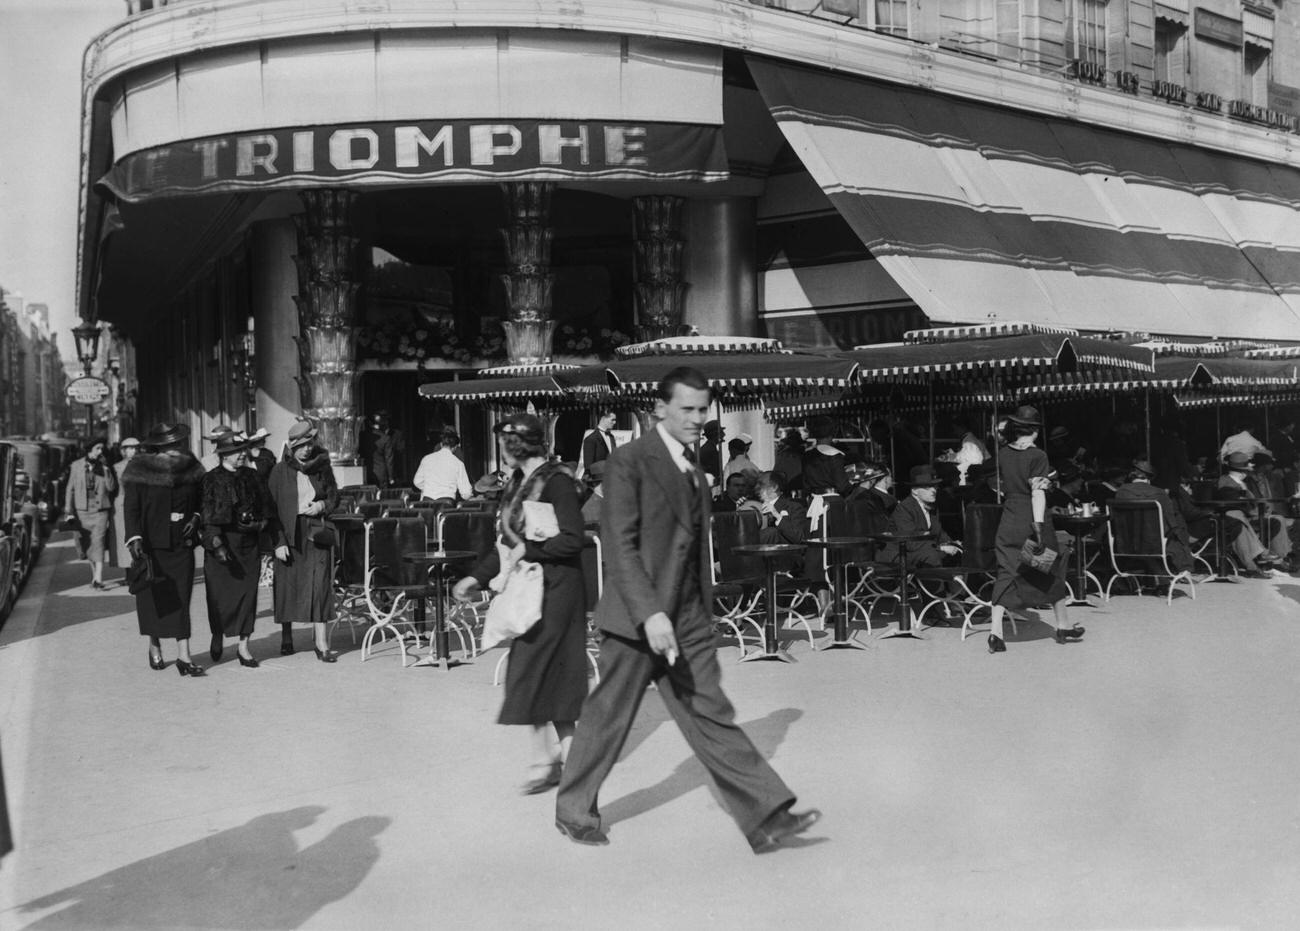 Cafe 'Le Triomphe' Terrace, Avenue des Champs Elysées, Paris, 1935